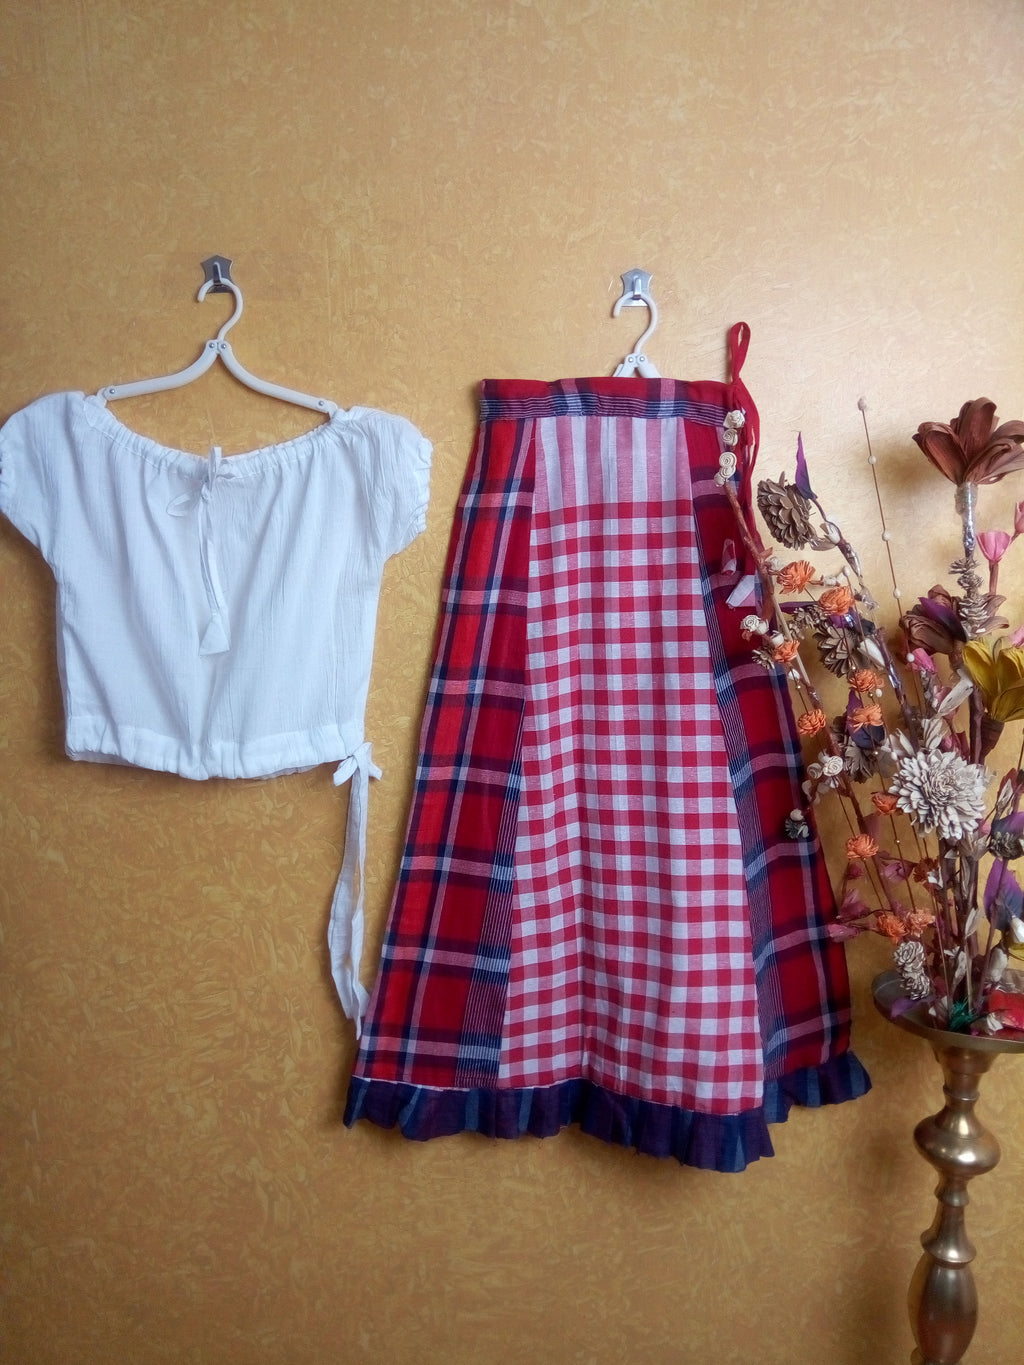 Girls lehanga skirts - white and red check's